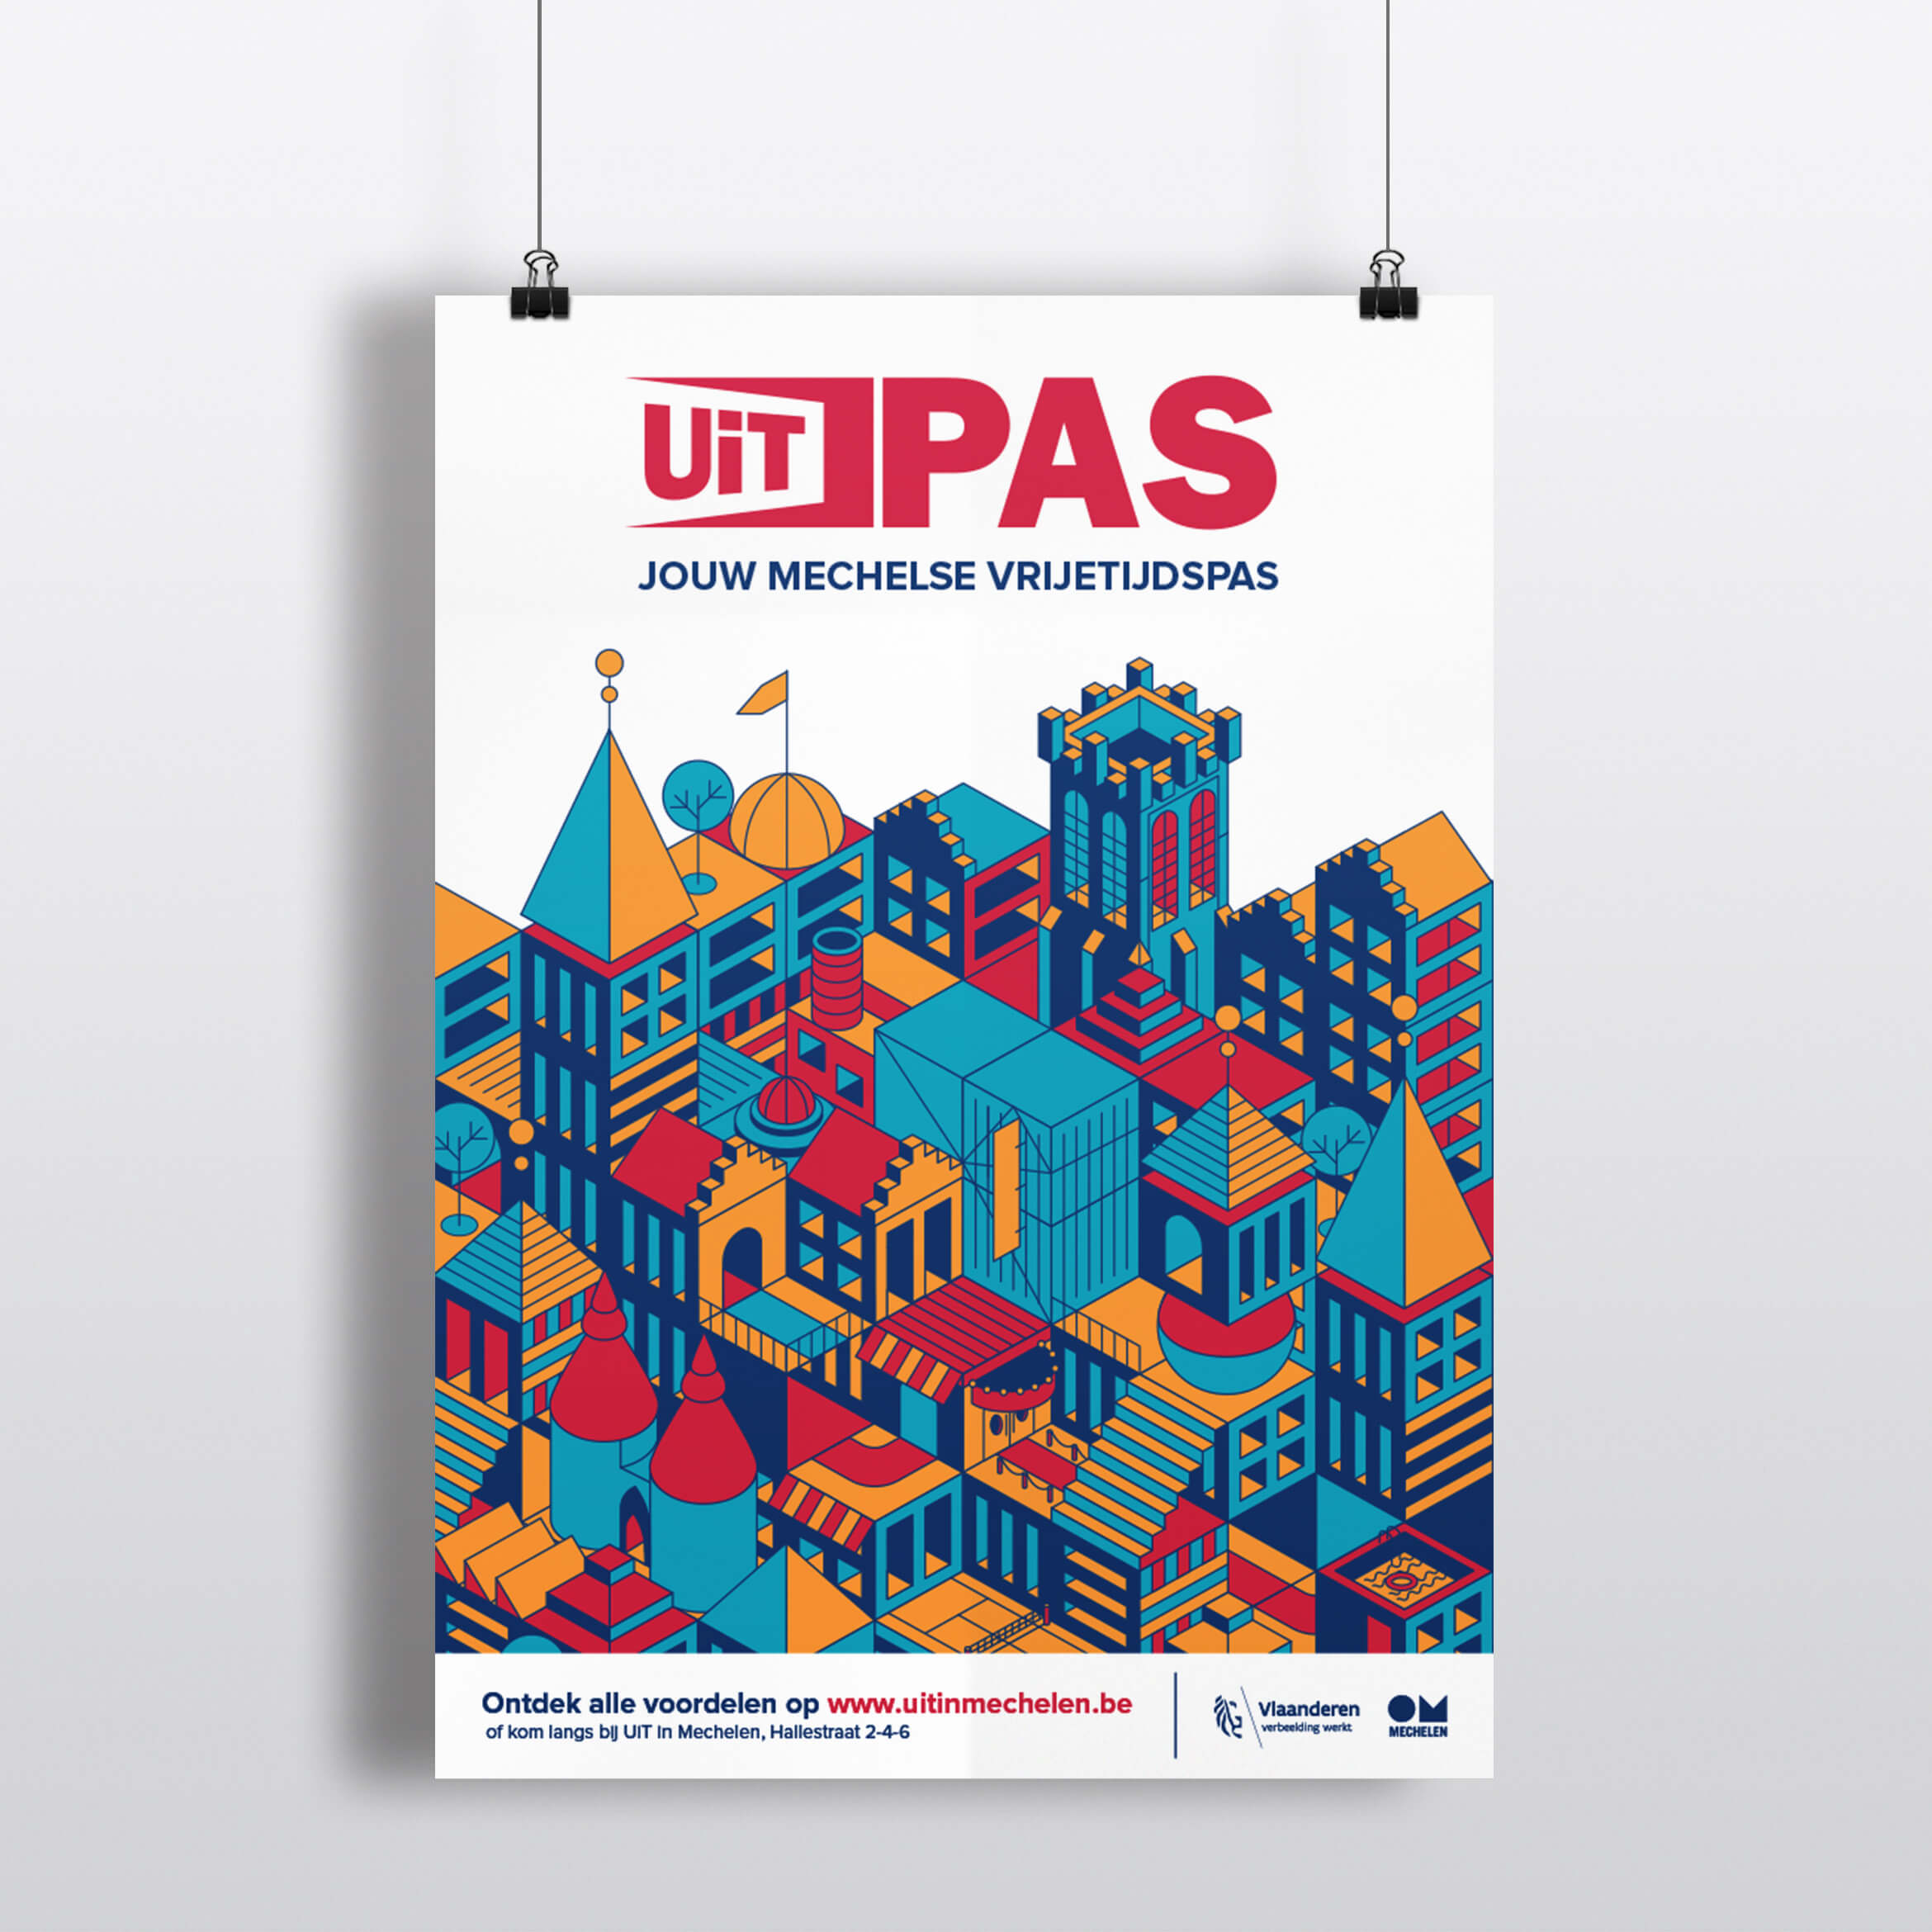 UITPAS_Mechelen_poster_1170